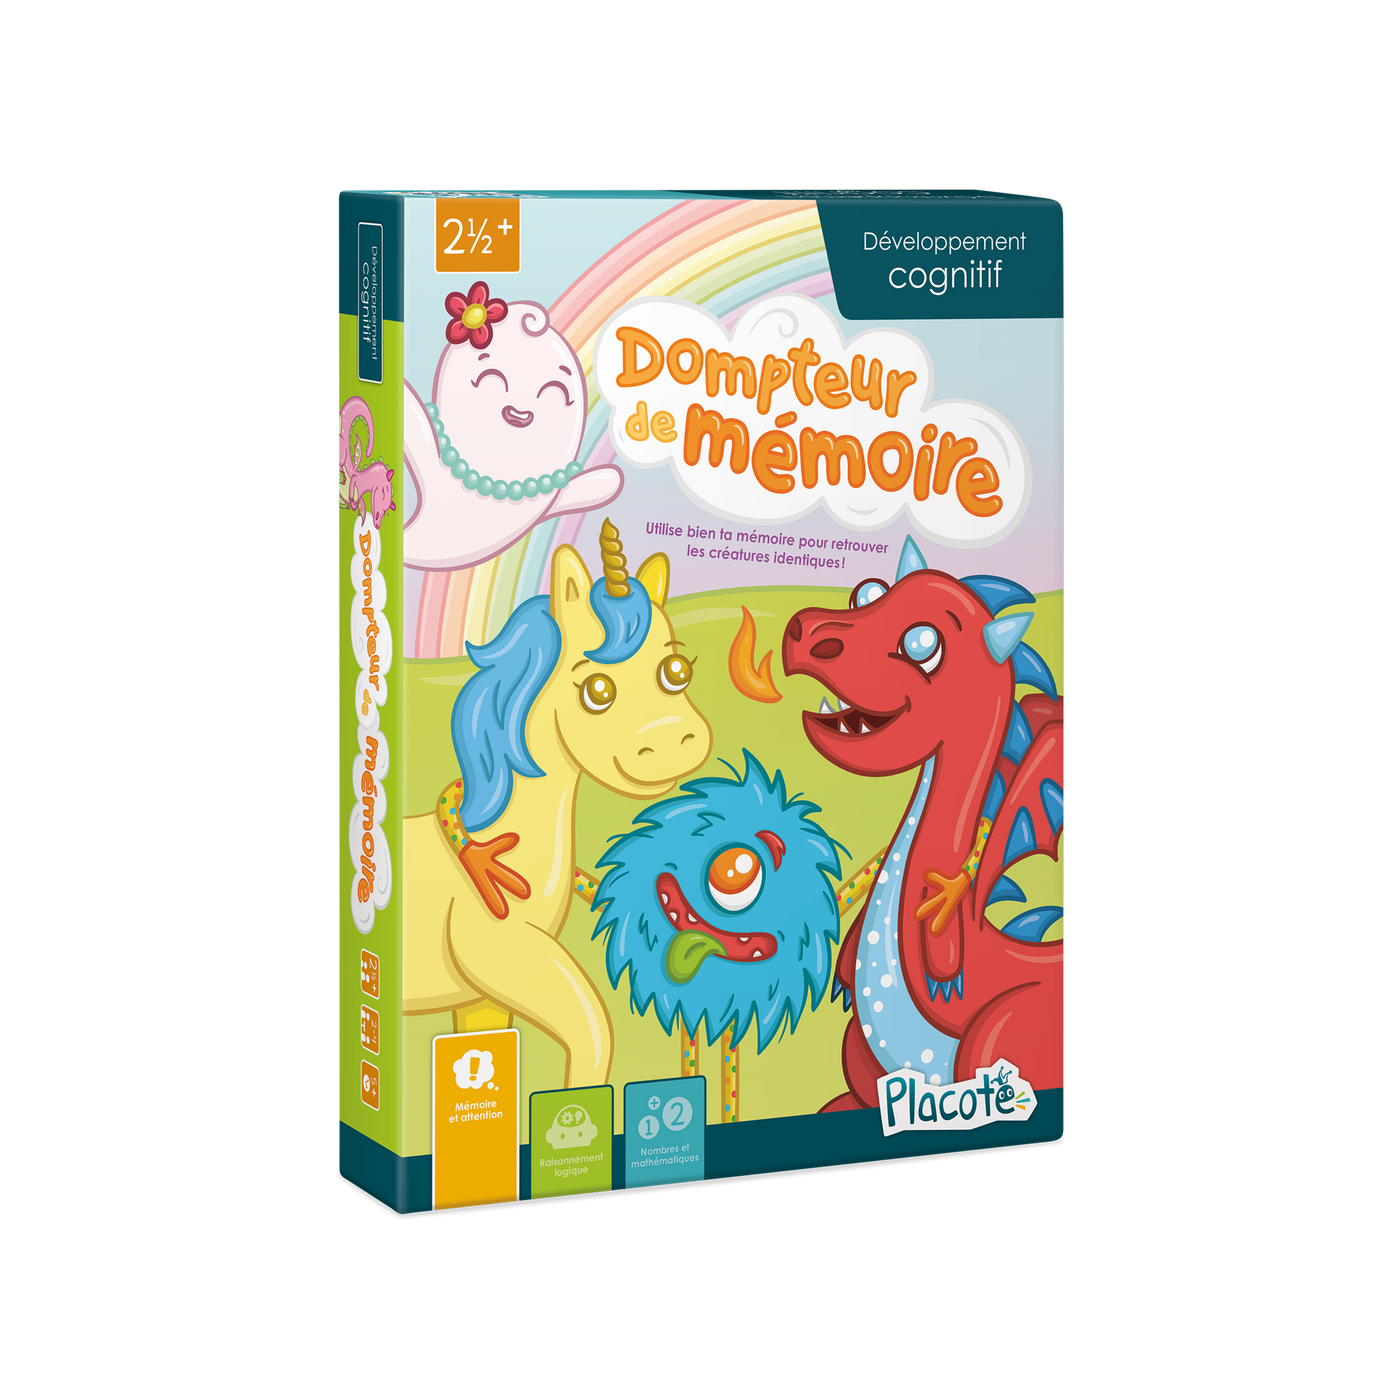 Dompteur de mémoire - Devant de la boite du jeu, illustrant des créatures colorées (fantôme, licorne, monstre, dragon) et un arc-en-ciel